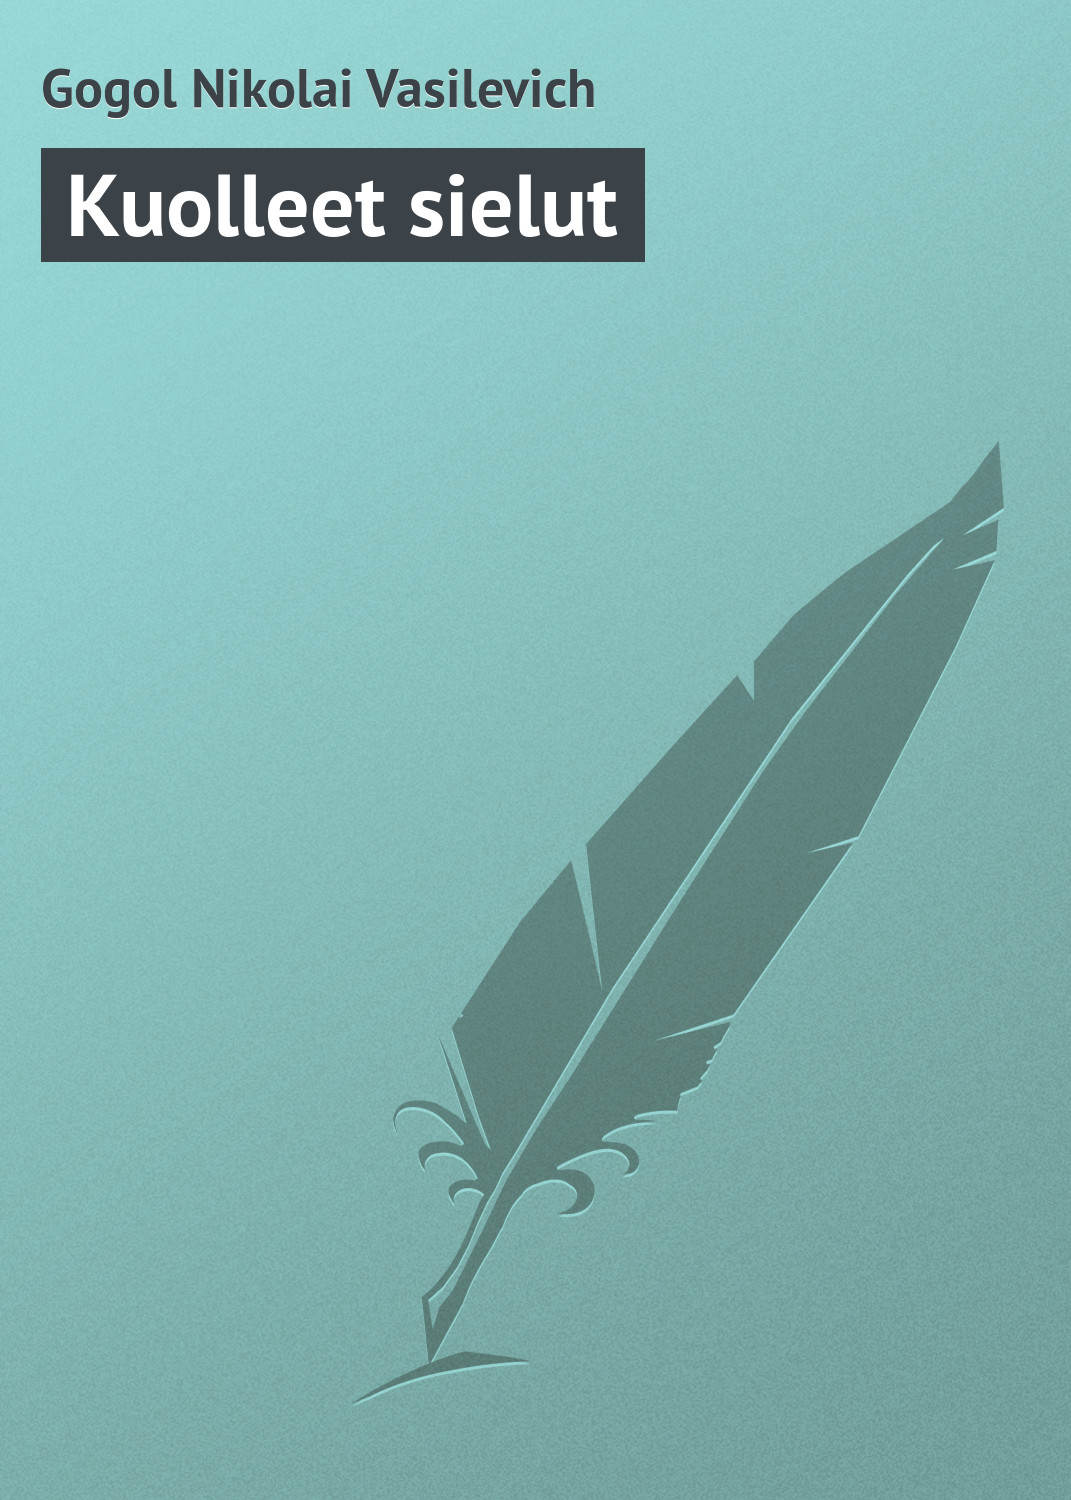 Книга Kuolleet sielut из серии , созданная Nikolai Gogol, может относится к жанру Зарубежная классика. Стоимость электронной книги Kuolleet sielut с идентификатором 23166603 составляет 5.99 руб.